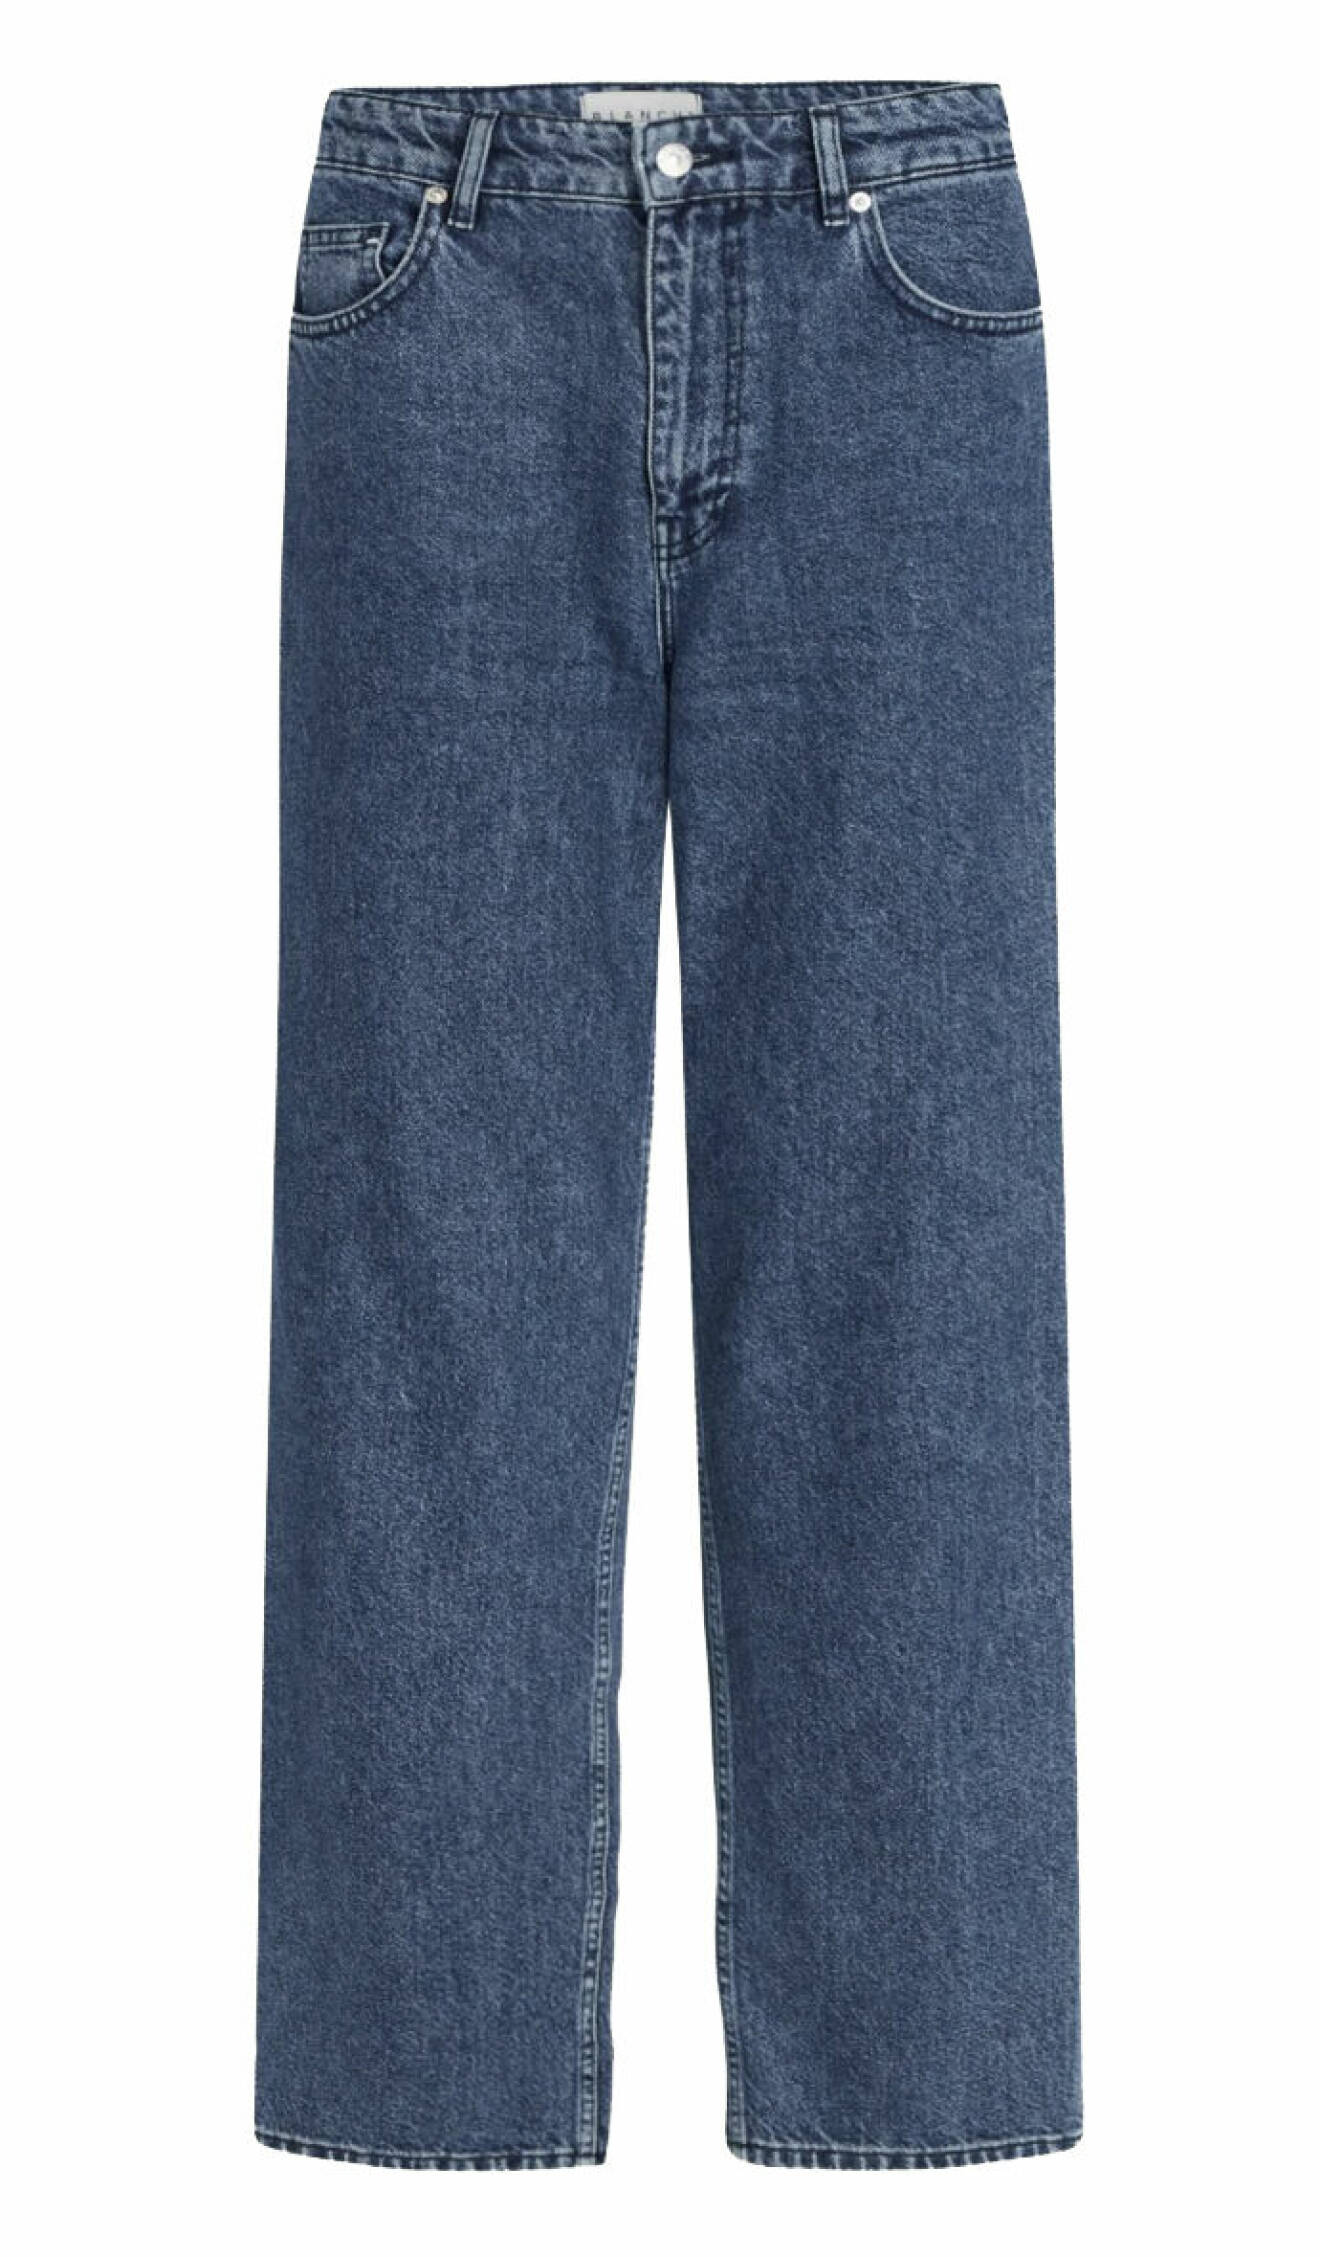 Mörkblå jeans från Blanche i ekologisk bomull.